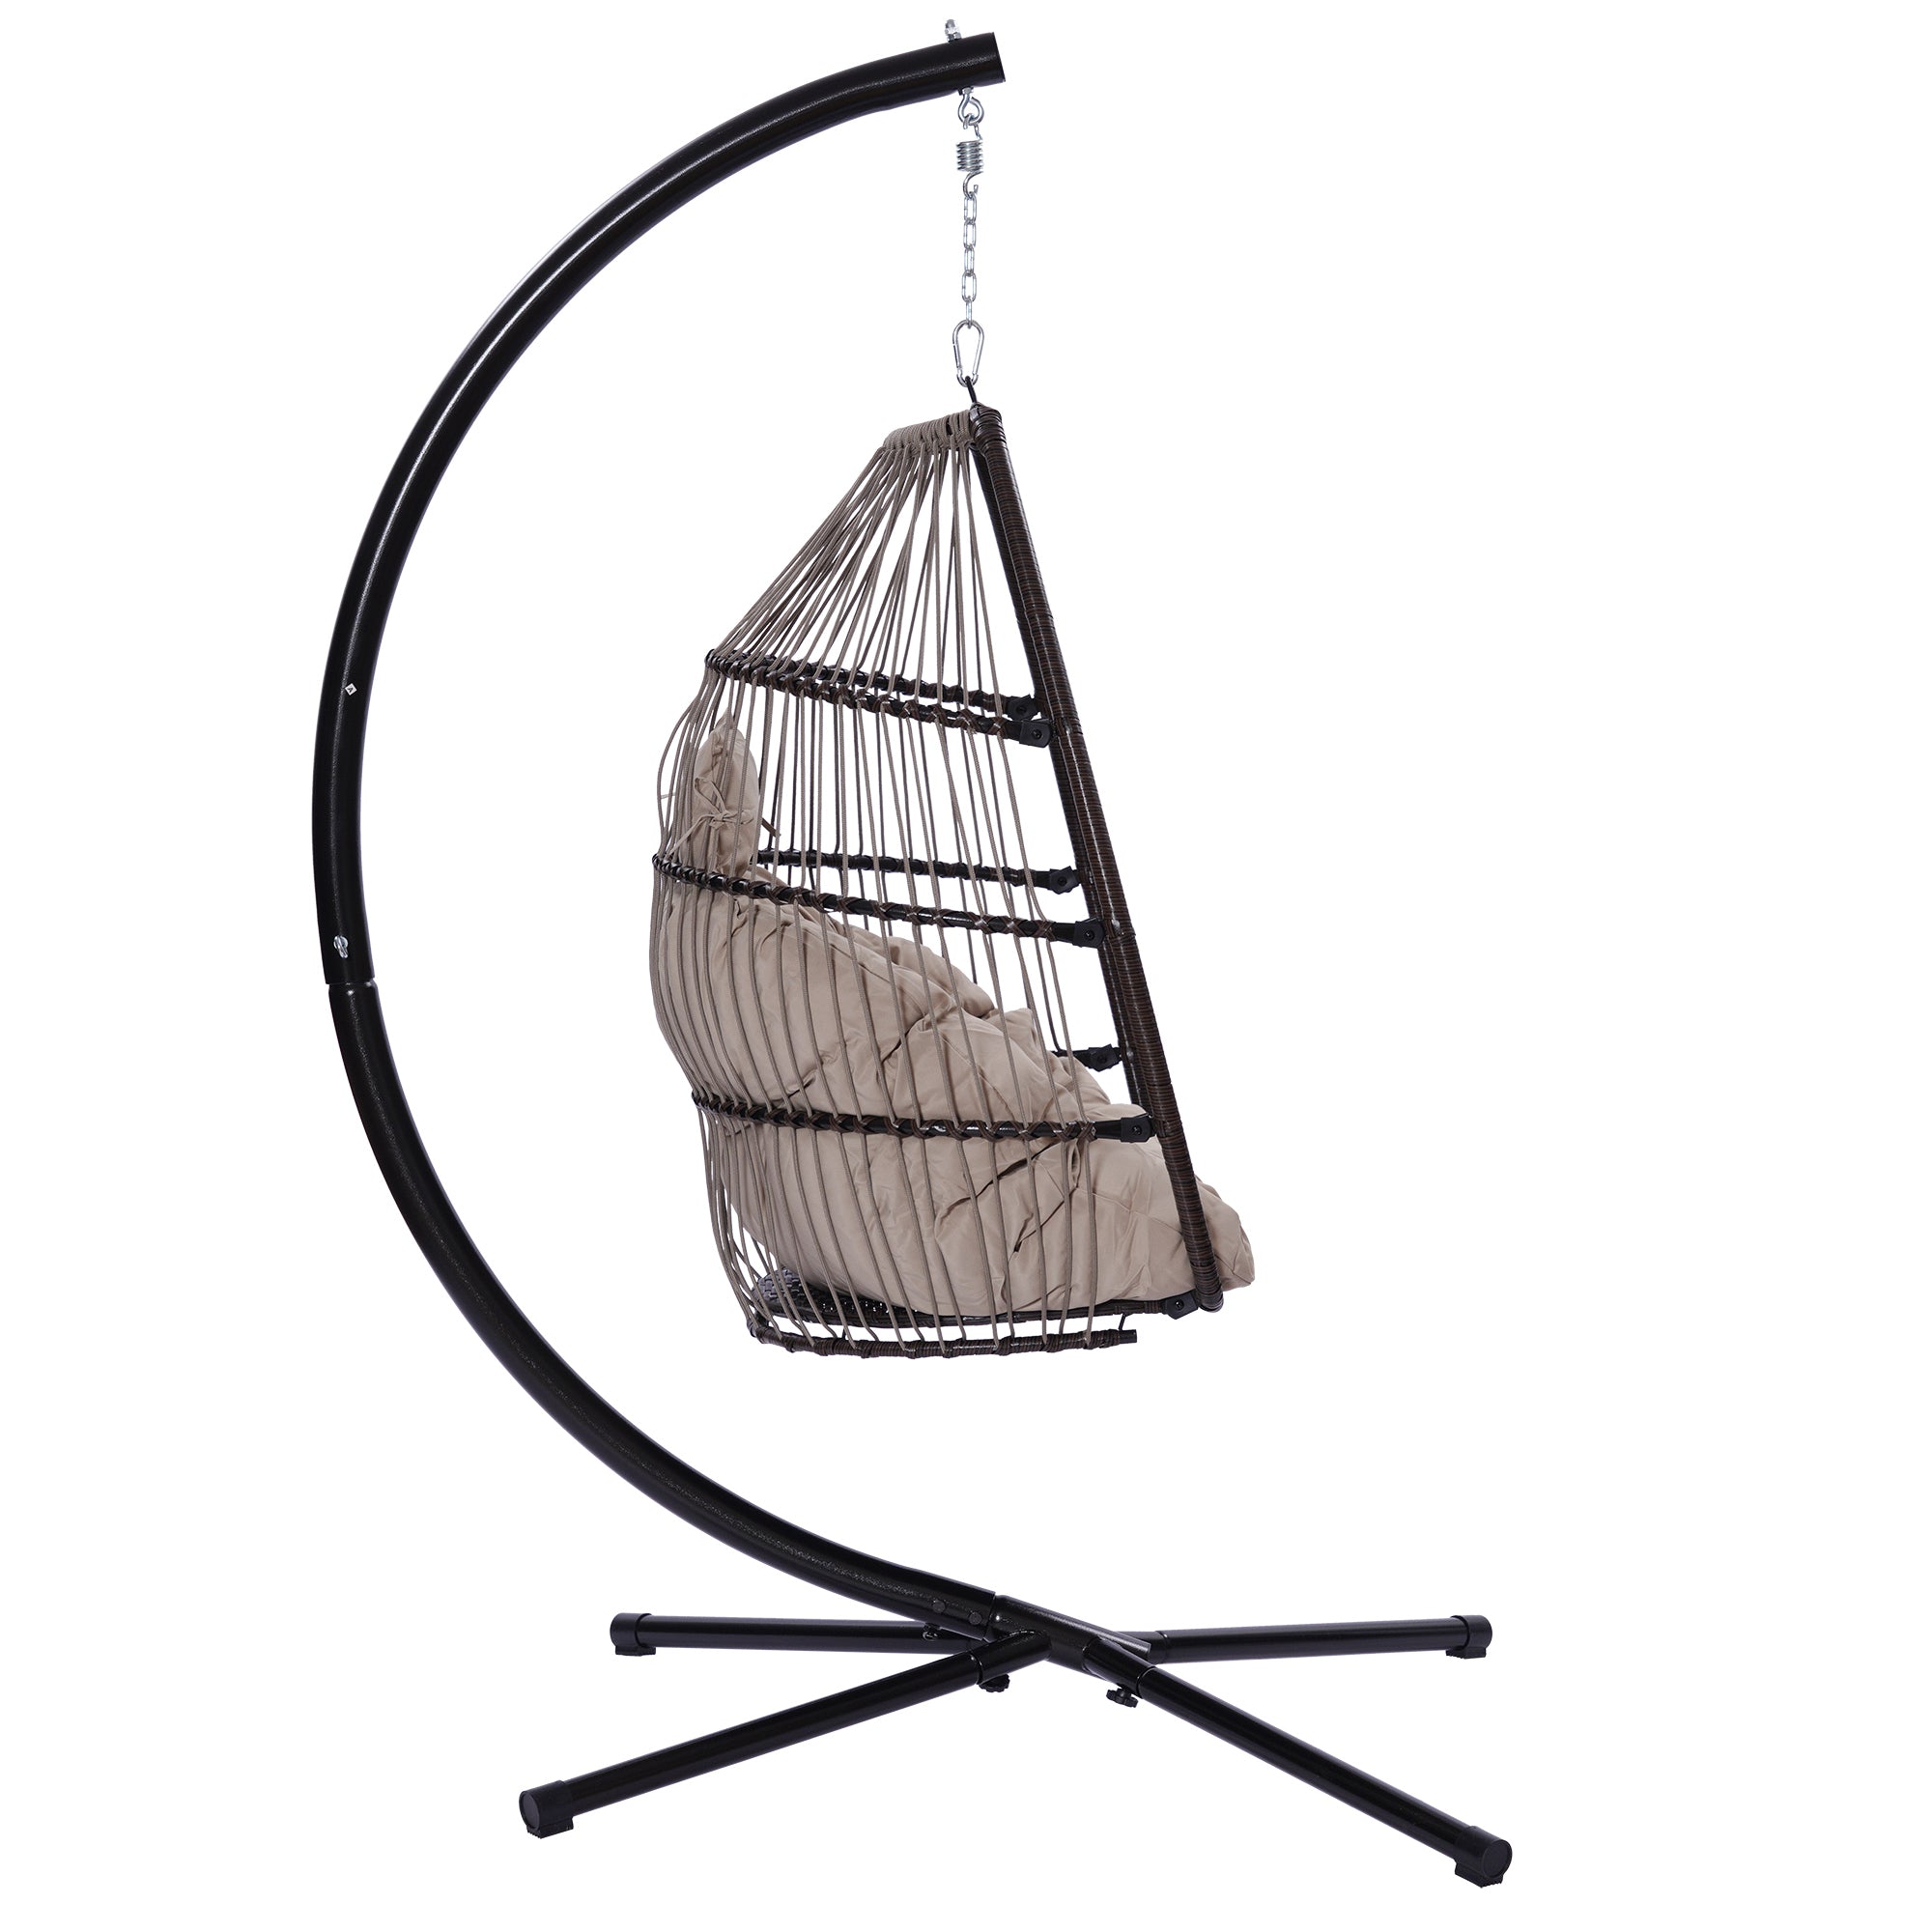 Outdoor Patio Wicker Folding Hanging Chair,Rattan beige brown-metal